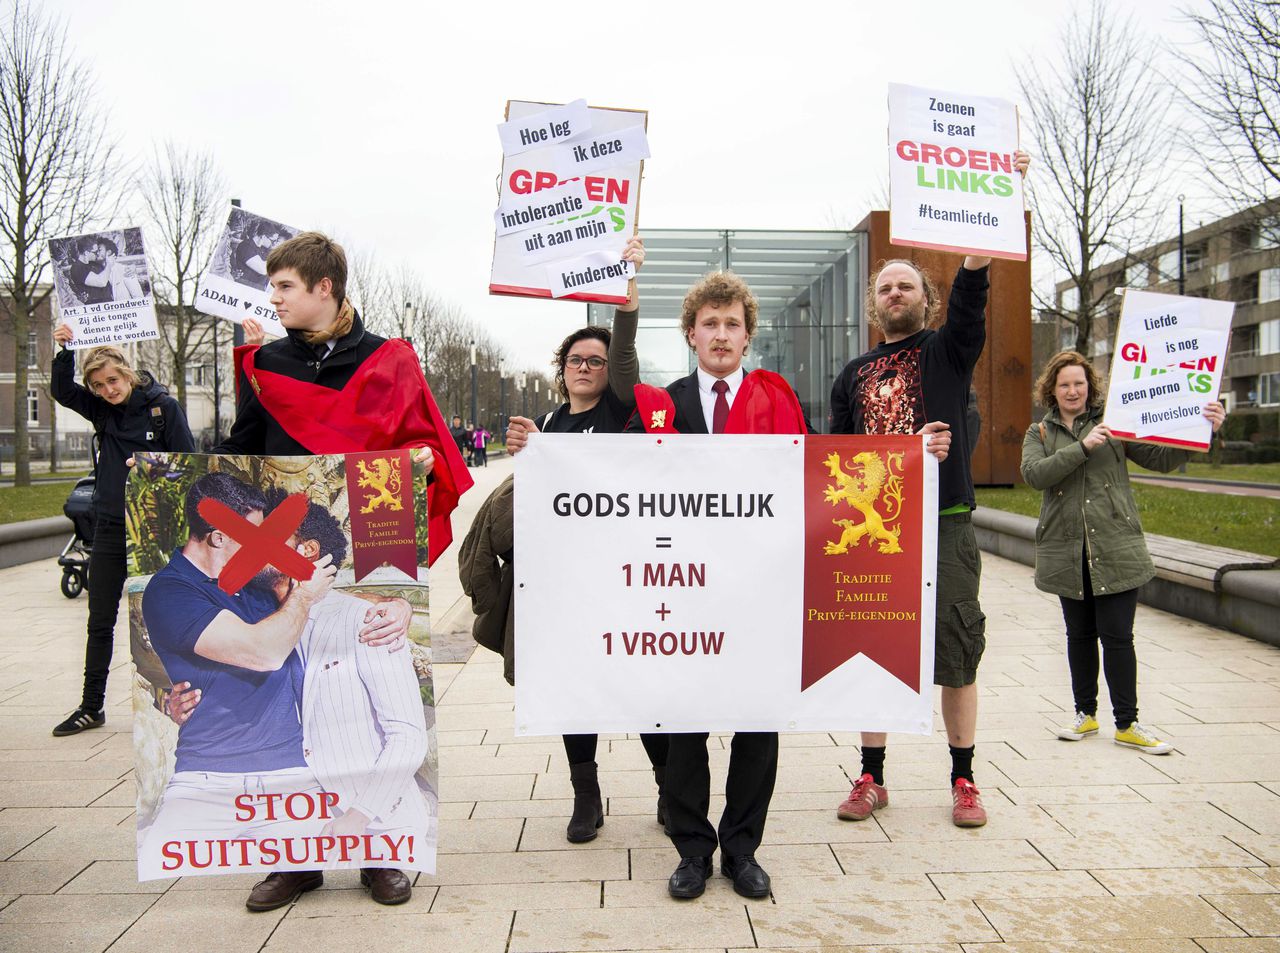 Twee leden van de stichting Civitas Christiana demonsteren in Nijmegen tegen de posters met zoenende mannen van Suitsupply. Naast hen staan tegendemonstranten van GroenLinks.